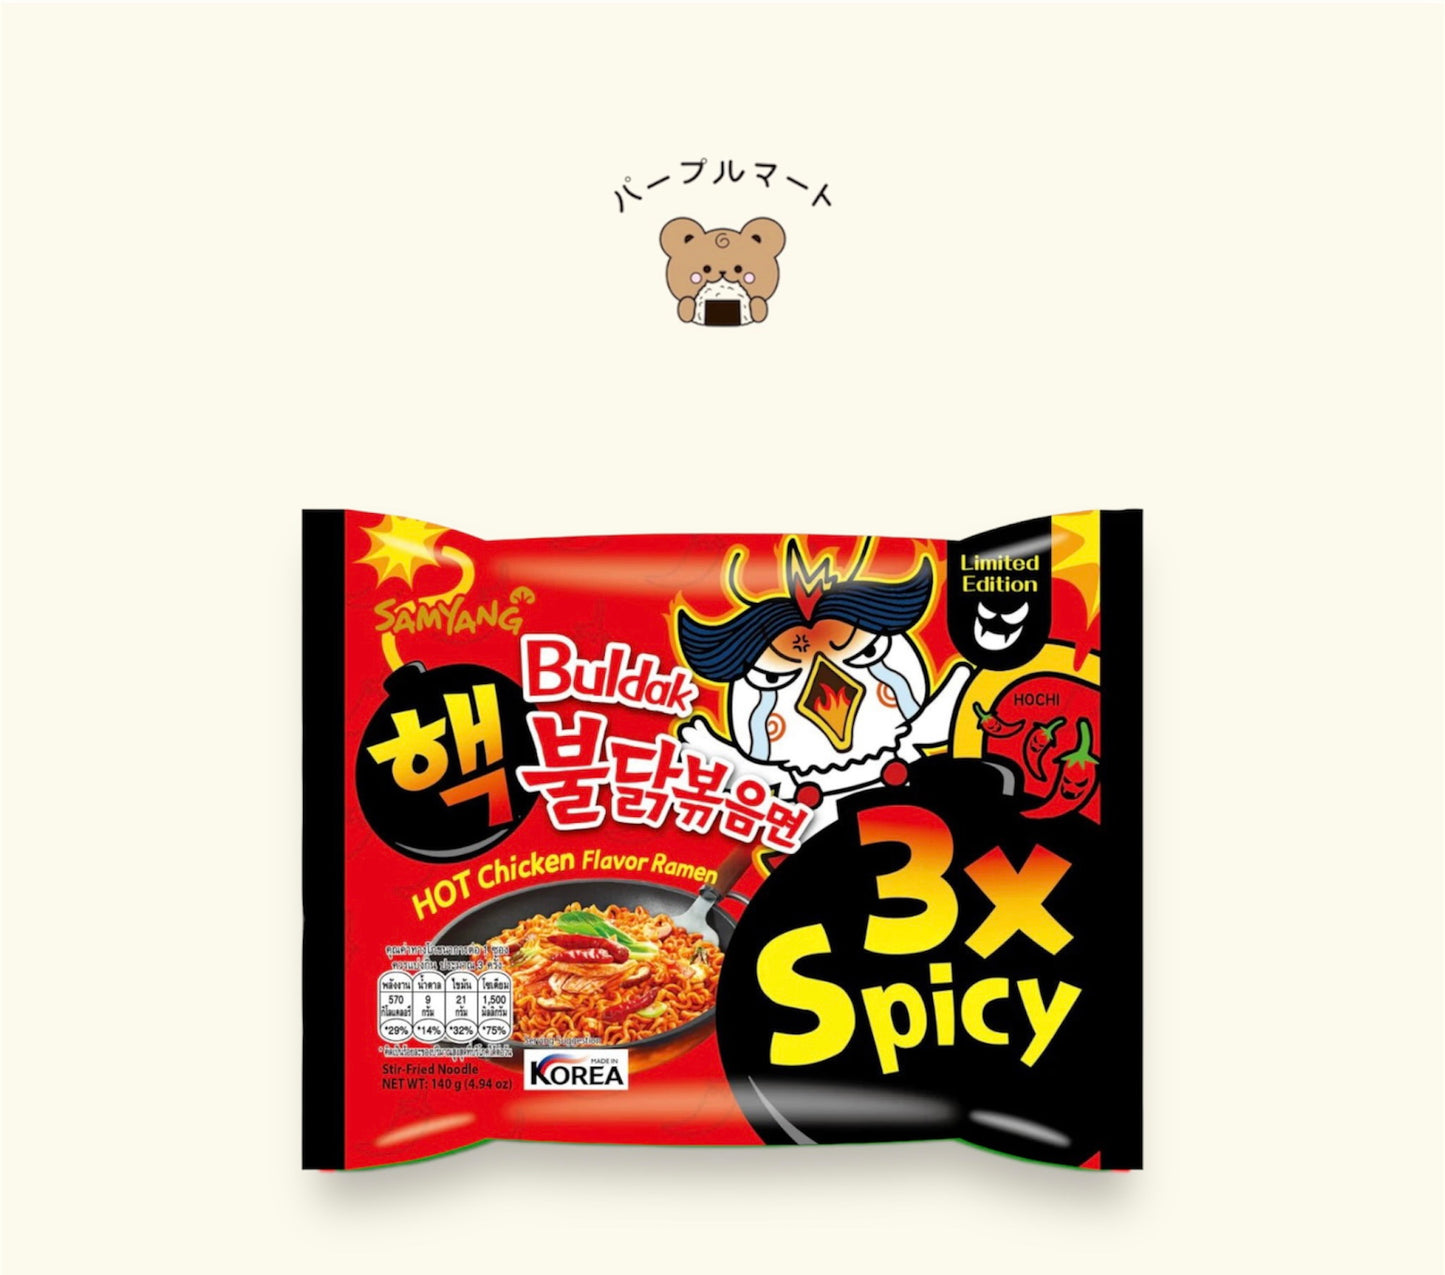 Samyang Buldak Hot Chicken Flavour Ramen - 3x Spicy 140g